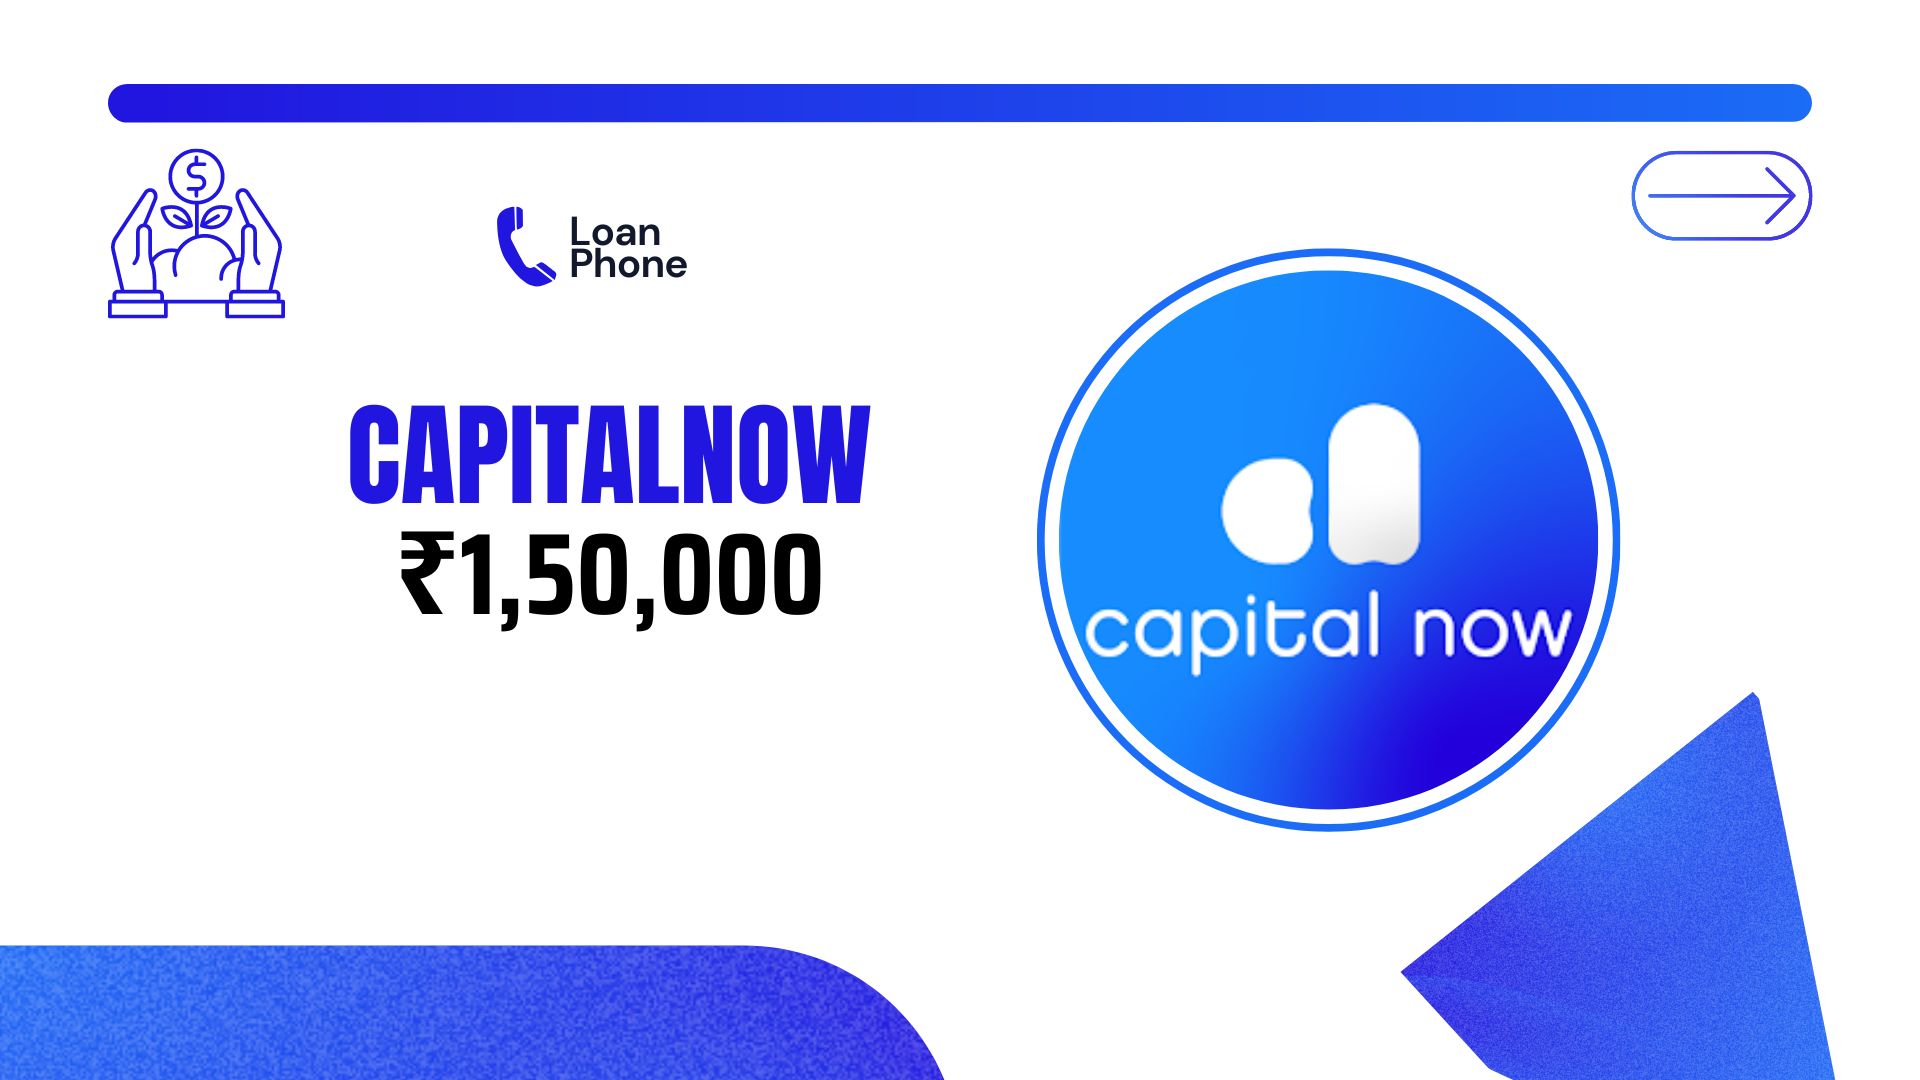 CapitalNow Loan App से कितने तक का लोन मिल सकता है?